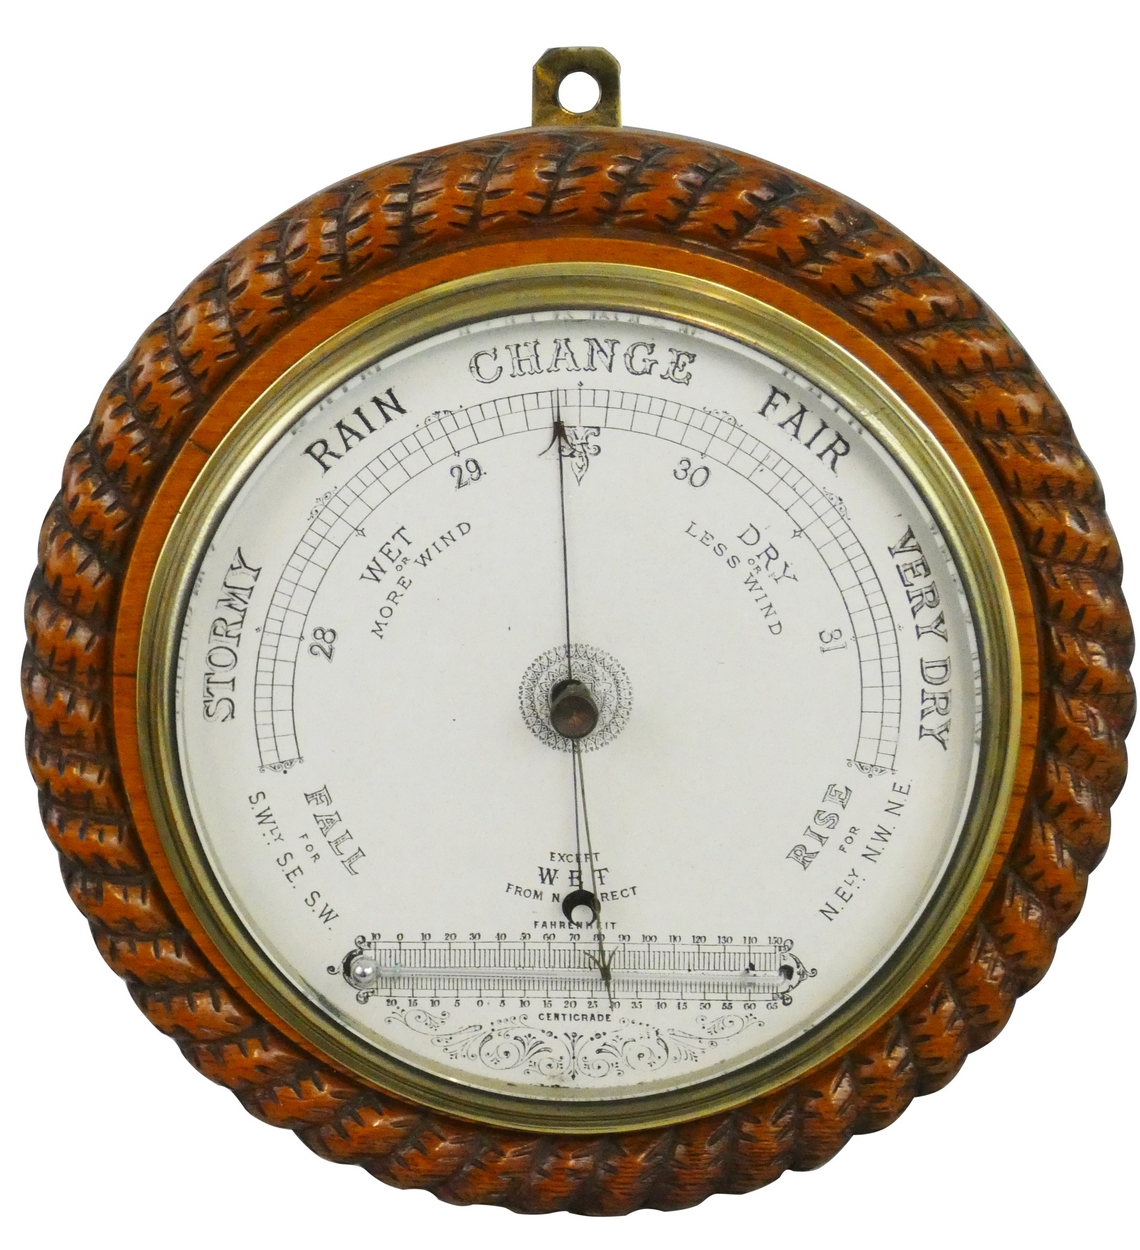 A circular oak barometer